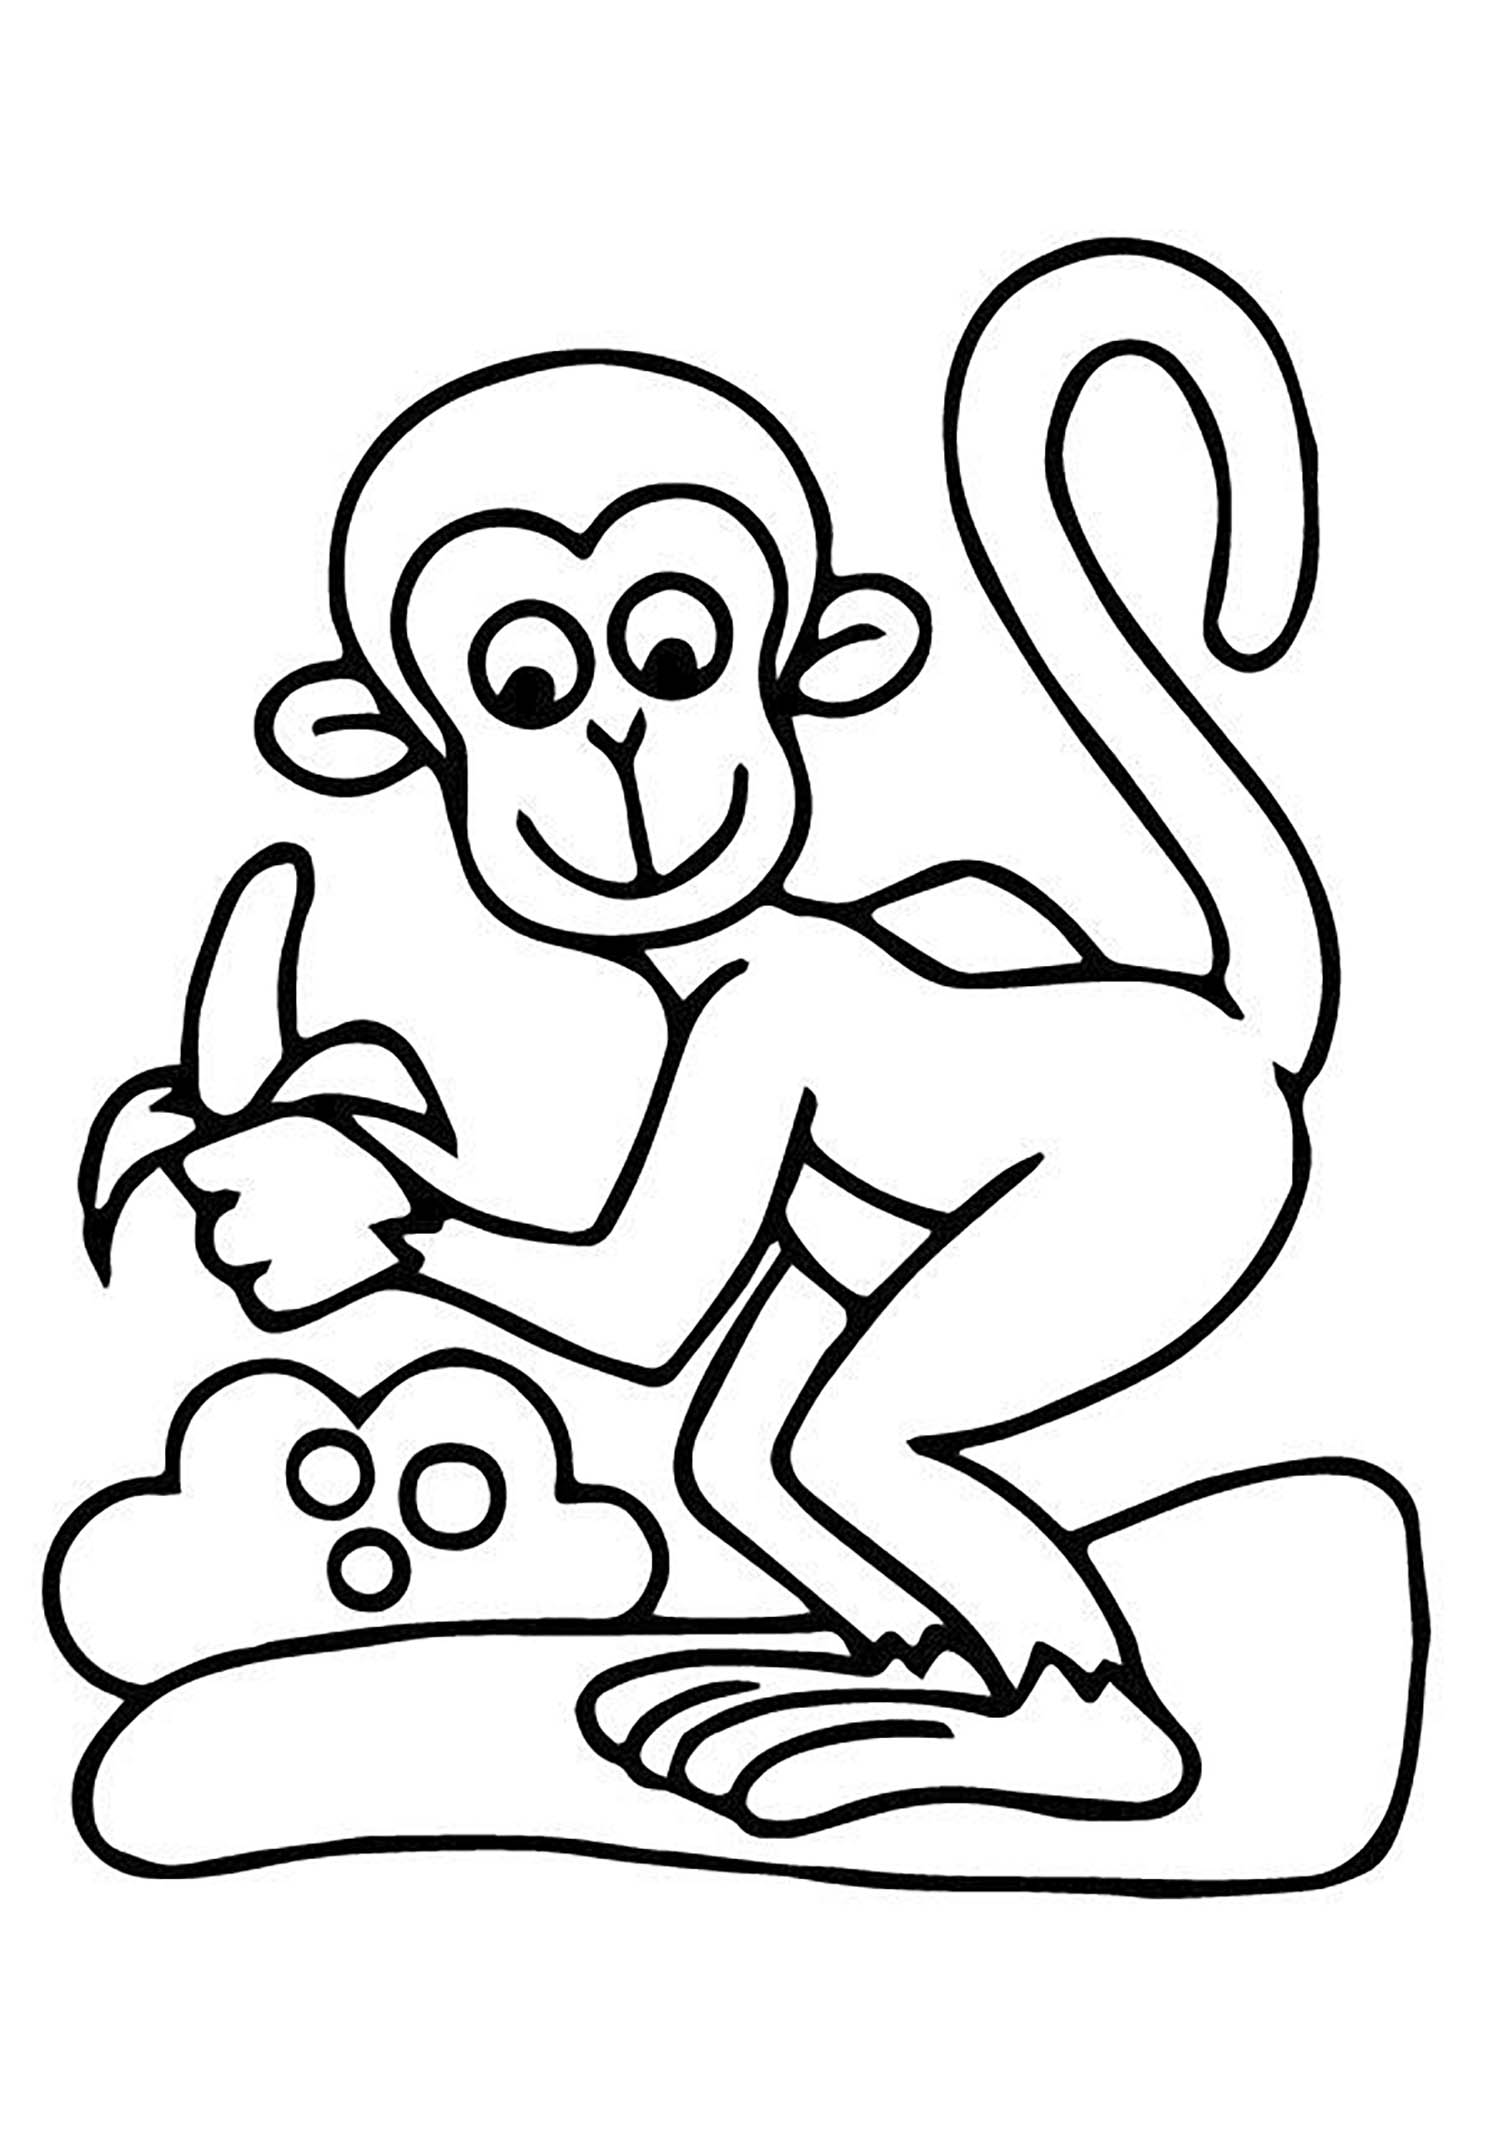 Dessin de singe à colorier, facile pour enfants